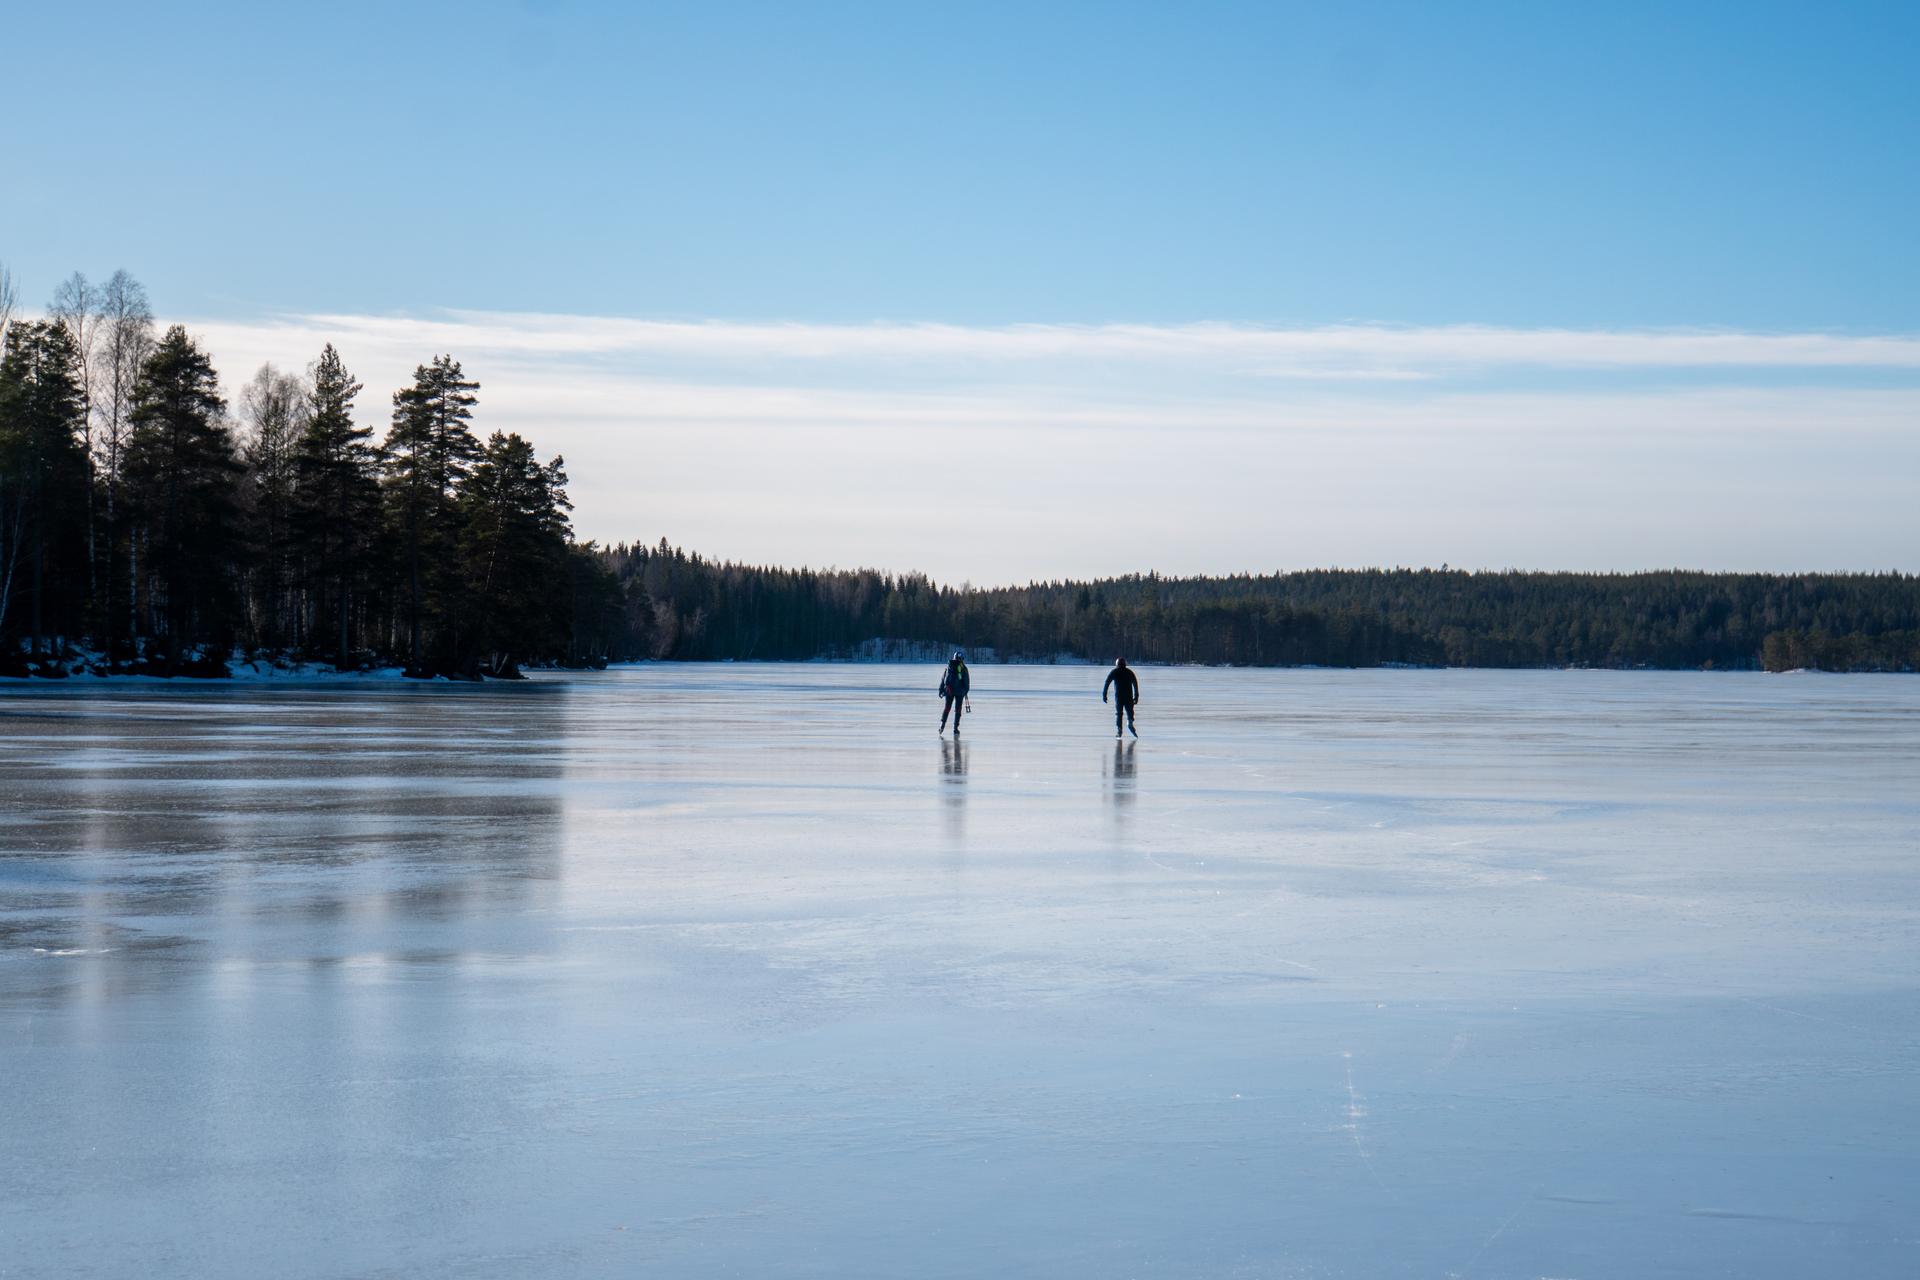 Una pareja de patinadores en la distancia disfruta del cielo despejado y el hielo liso durante una excursión de patinaje sobre hielo guiada.